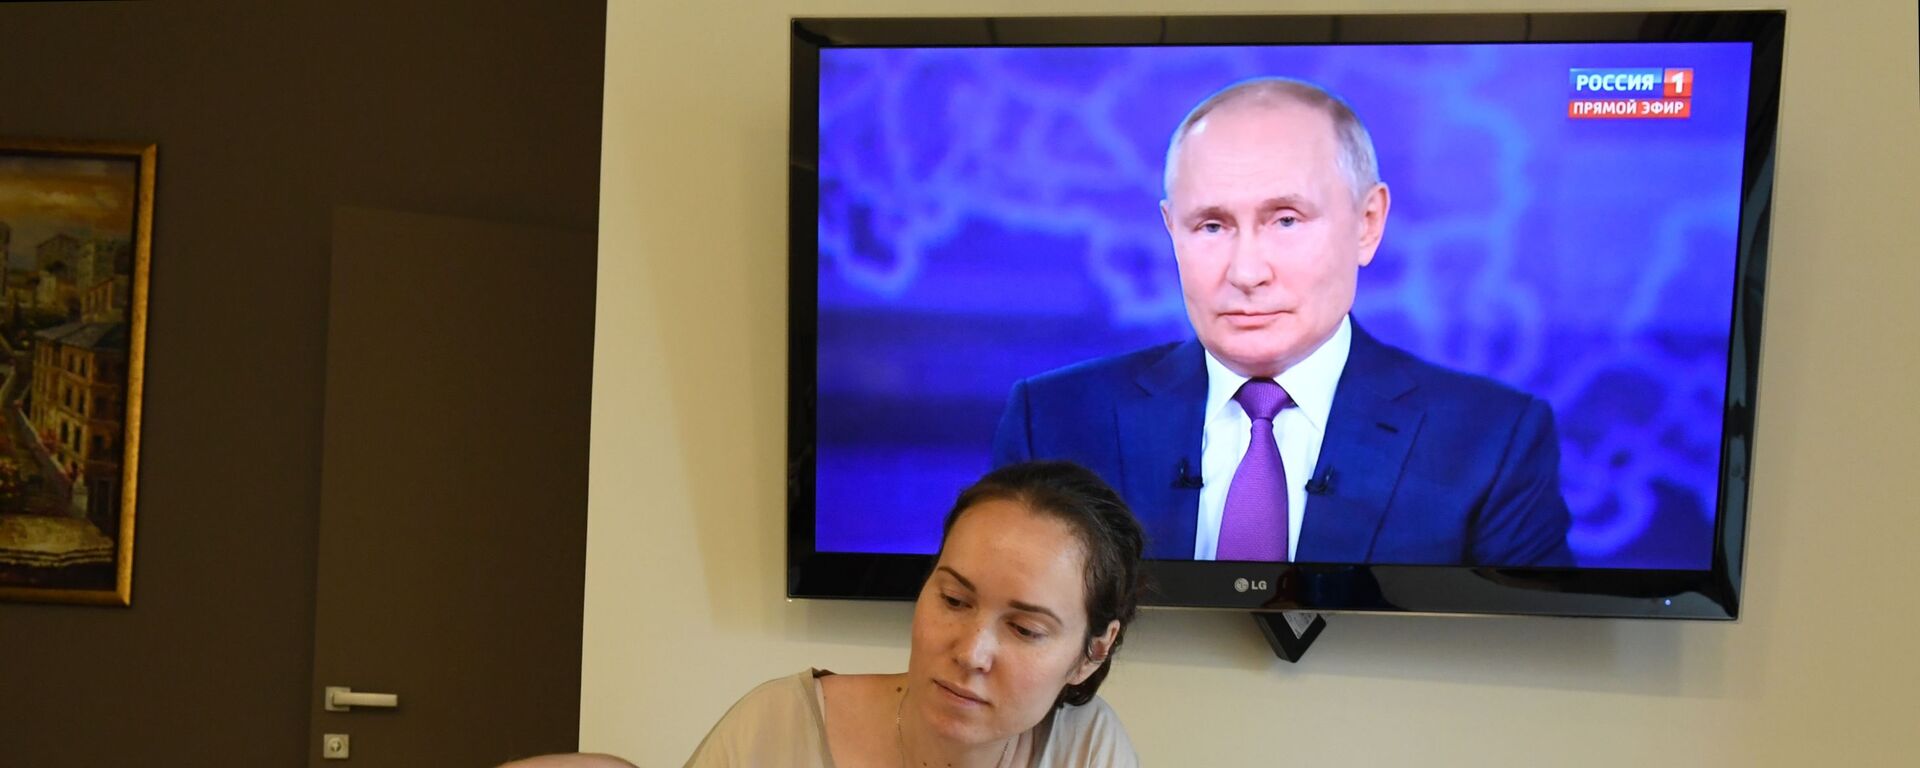 Женщина с ребенком смотрят трансляцию прямой линии с президентом России Владимиром Путиным - Sputnik Србија, 1920, 08.06.2022